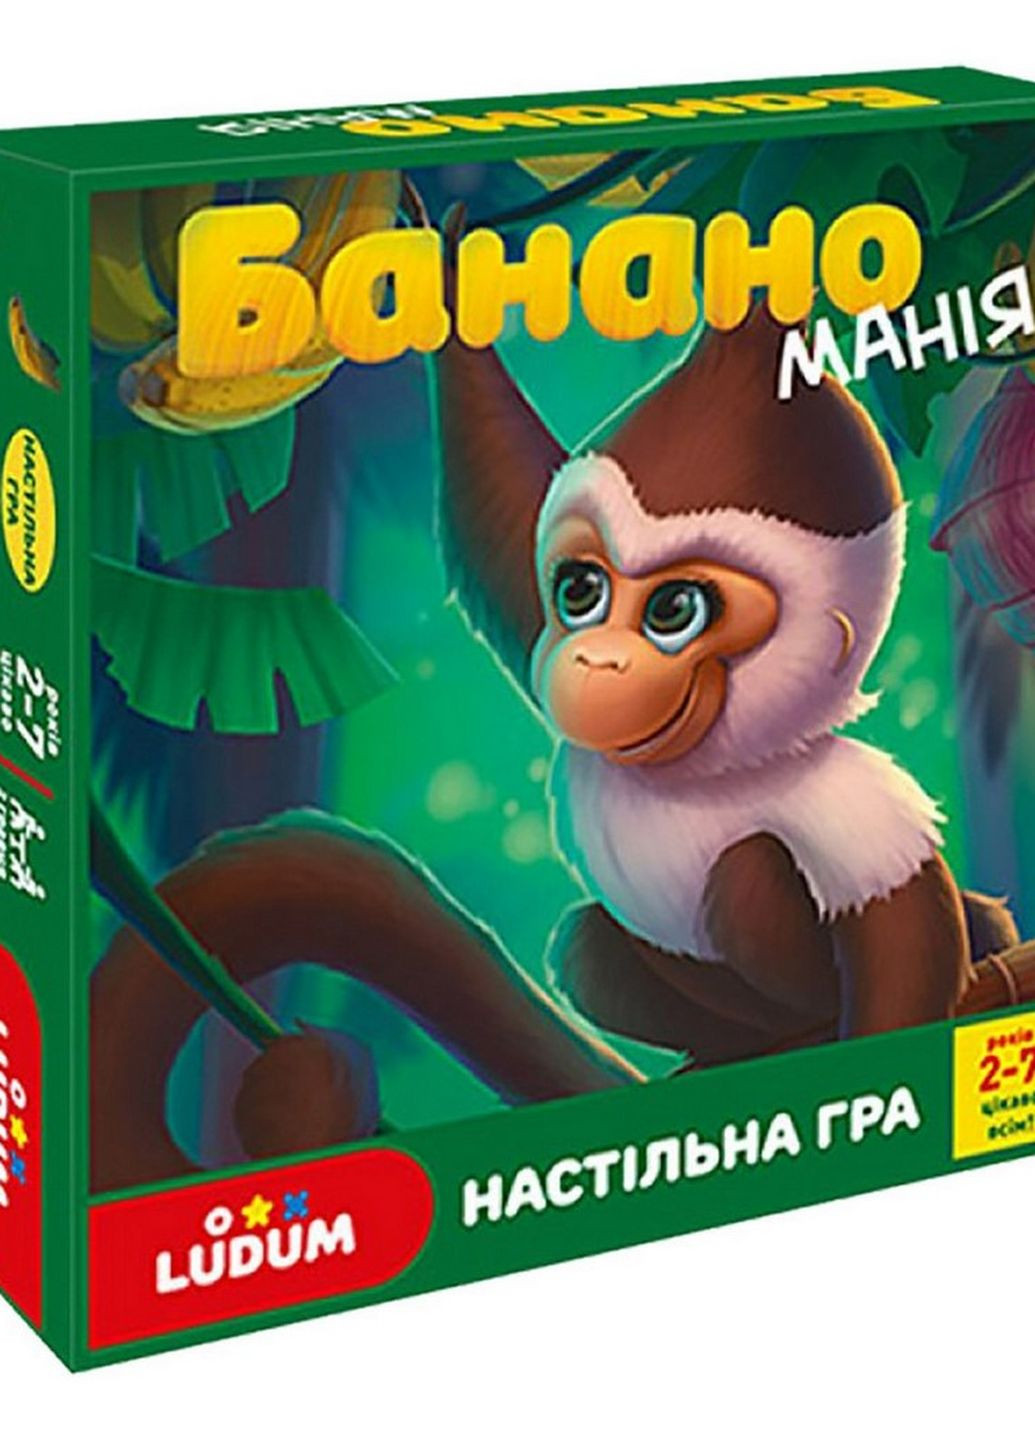 Детская настольная игра "Бананомания" LD1049-53 украинский язык Ludum (262085426)